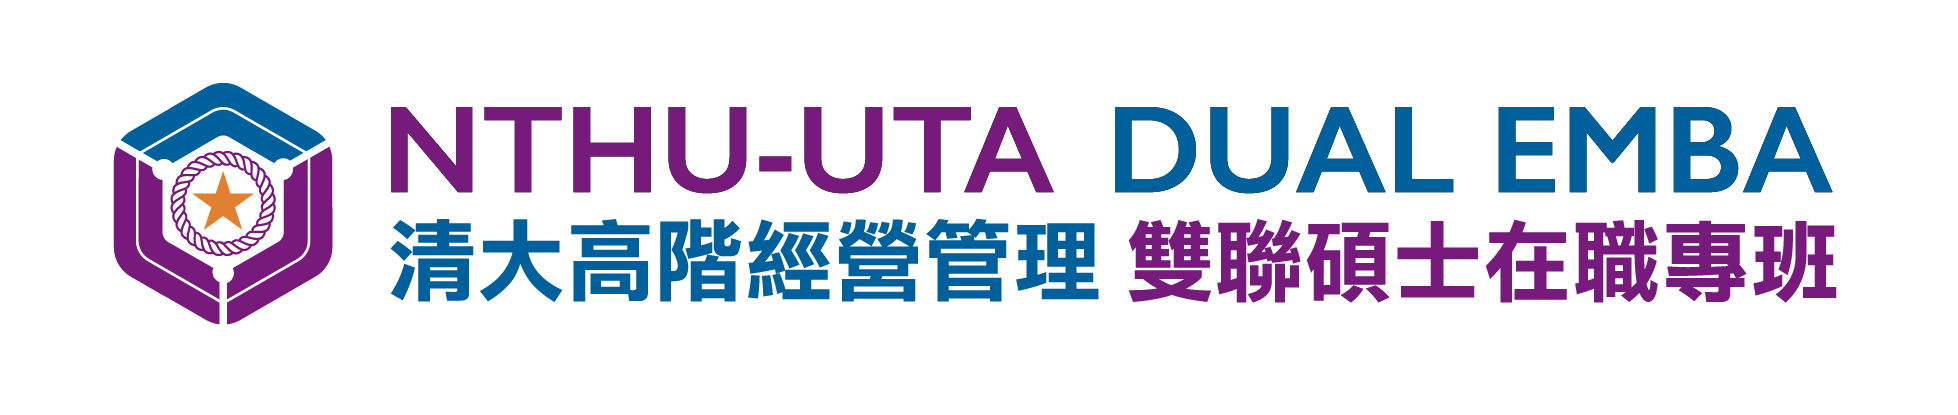 NTHU-UTA Dual EMBA 國立清華大學高階經營管理雙聯碩士在職學位學程